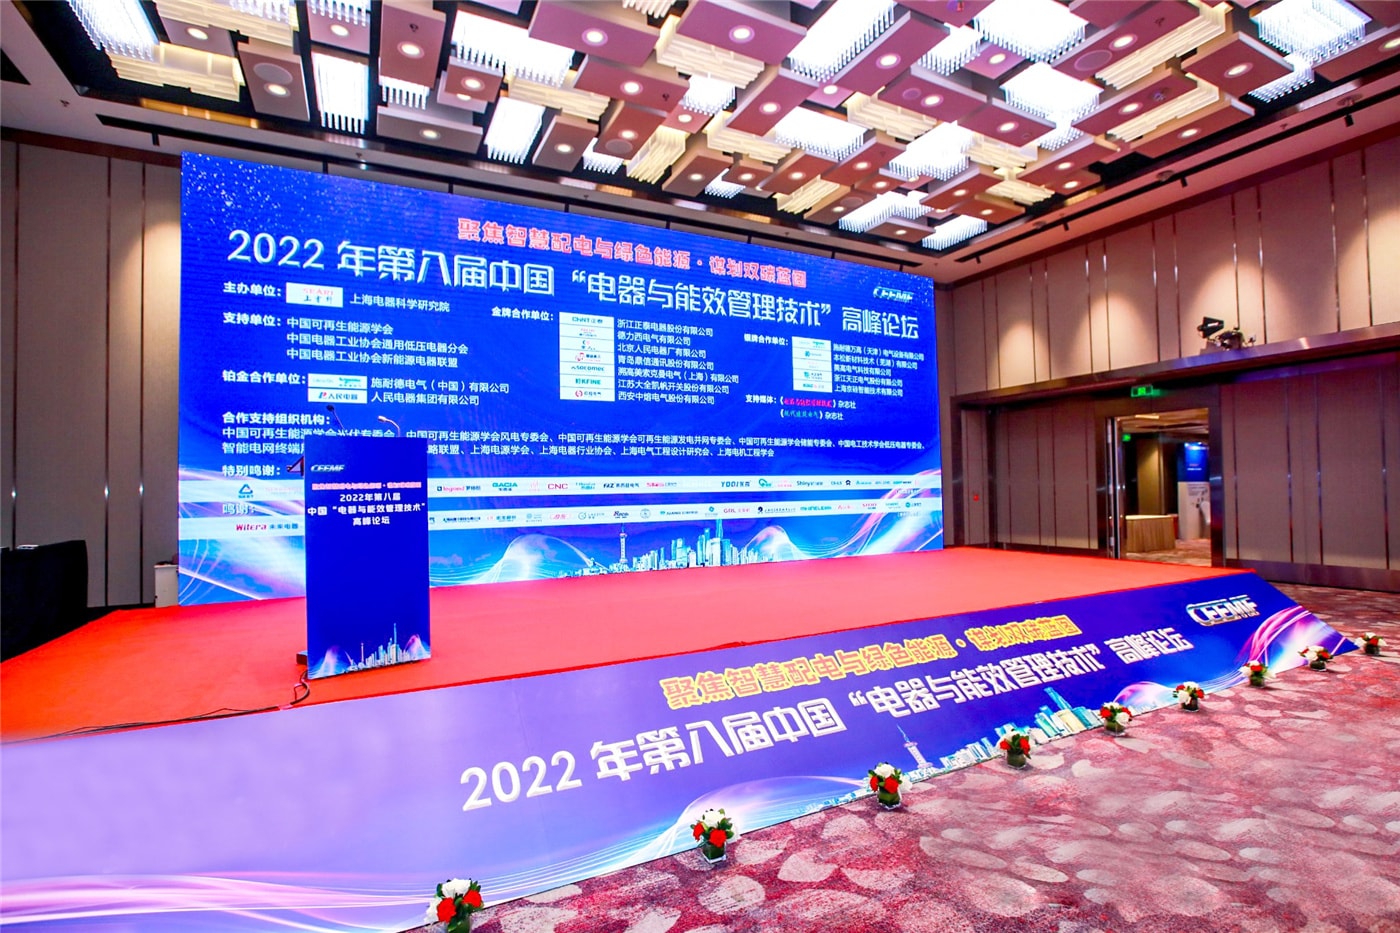 Benlong Automation è stata invitata a partecipare all'ottavo vertice cinese "Tecnologia di gestione degli elettrodomestici e dell'efficienza energetica" 2022